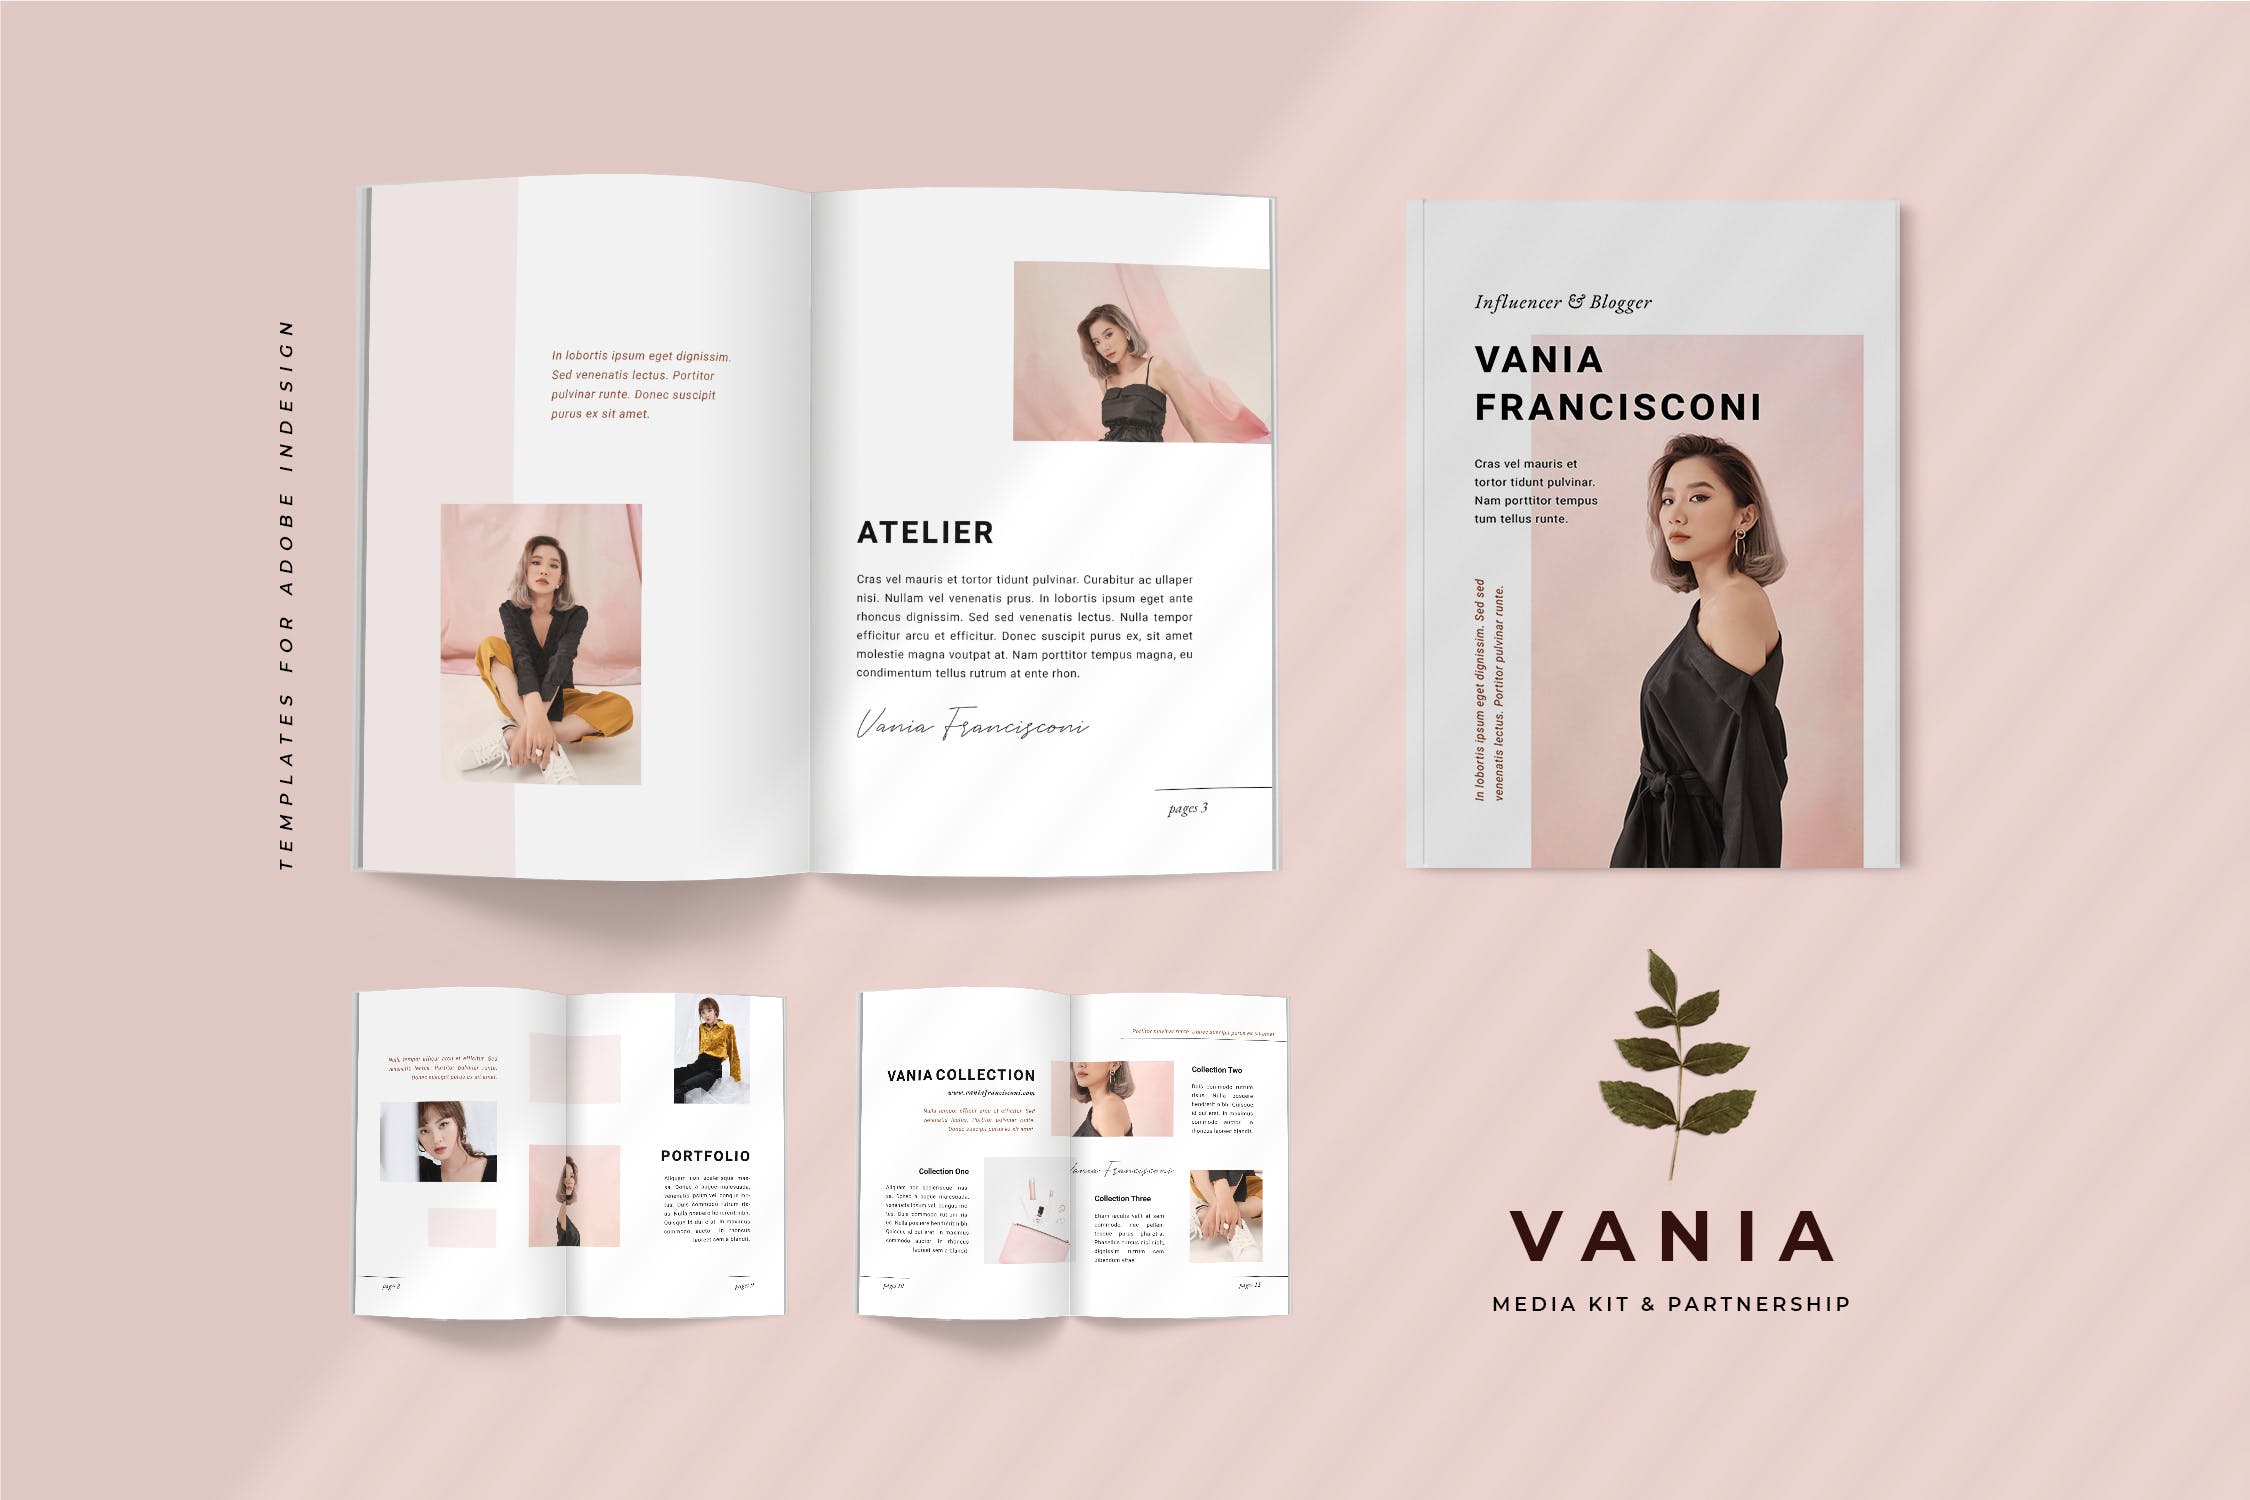 优雅时尚博客媒体品牌宣传设计素材工具包 Vania Media / Press Kit Template插图